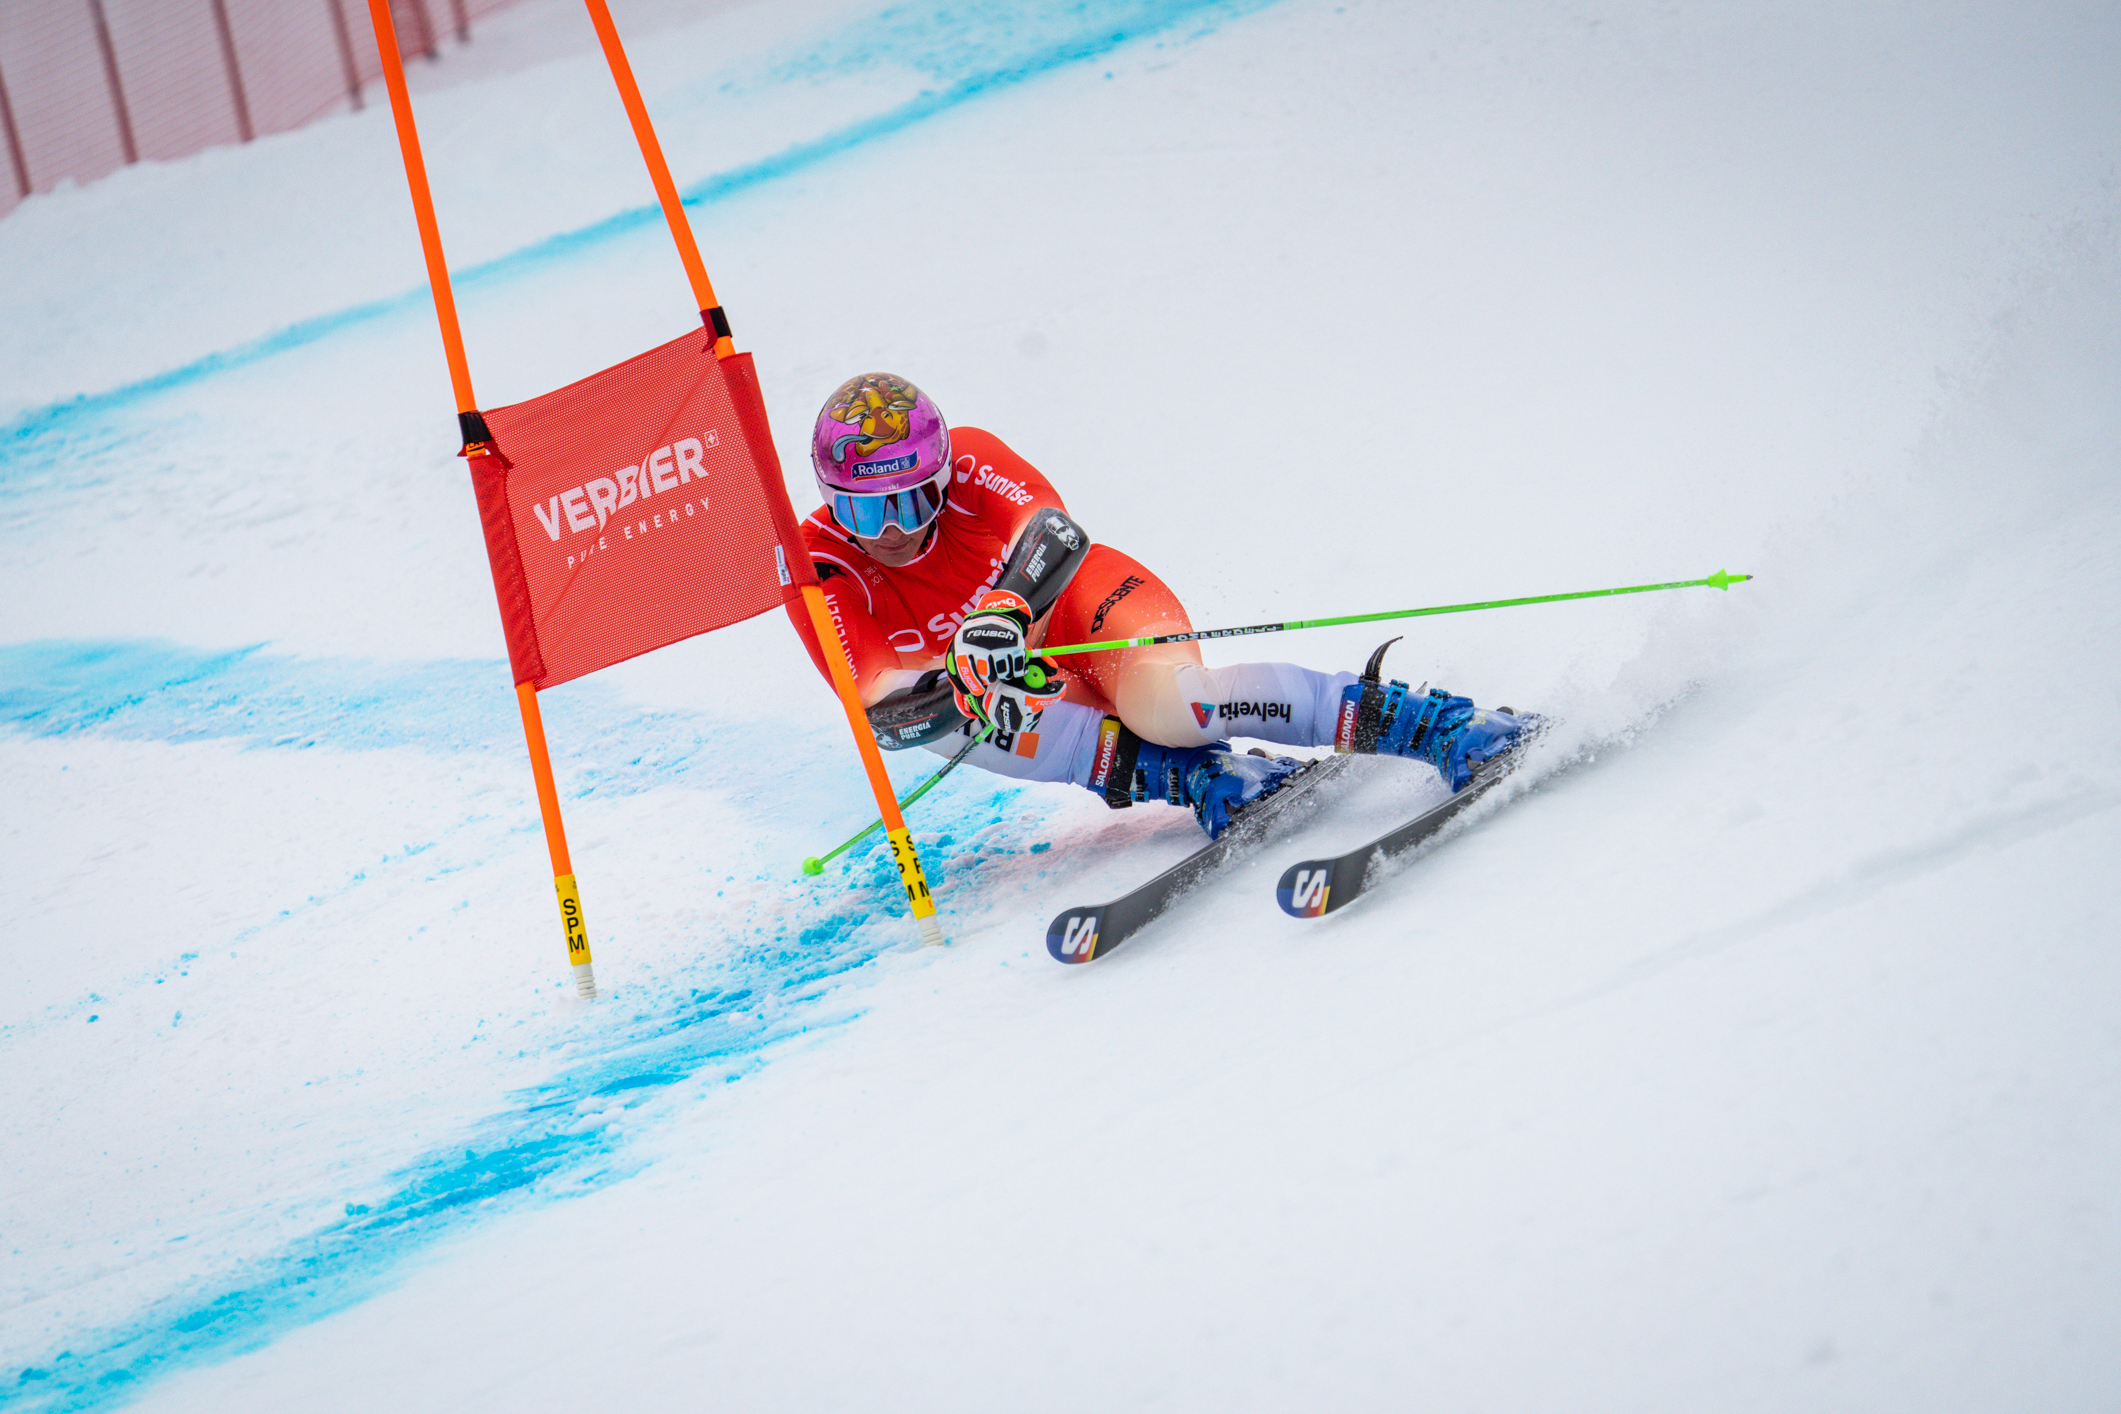 Ski alpin: Grâce à la constance, Arnaud Boisset est entré dans une nouvelle dimension